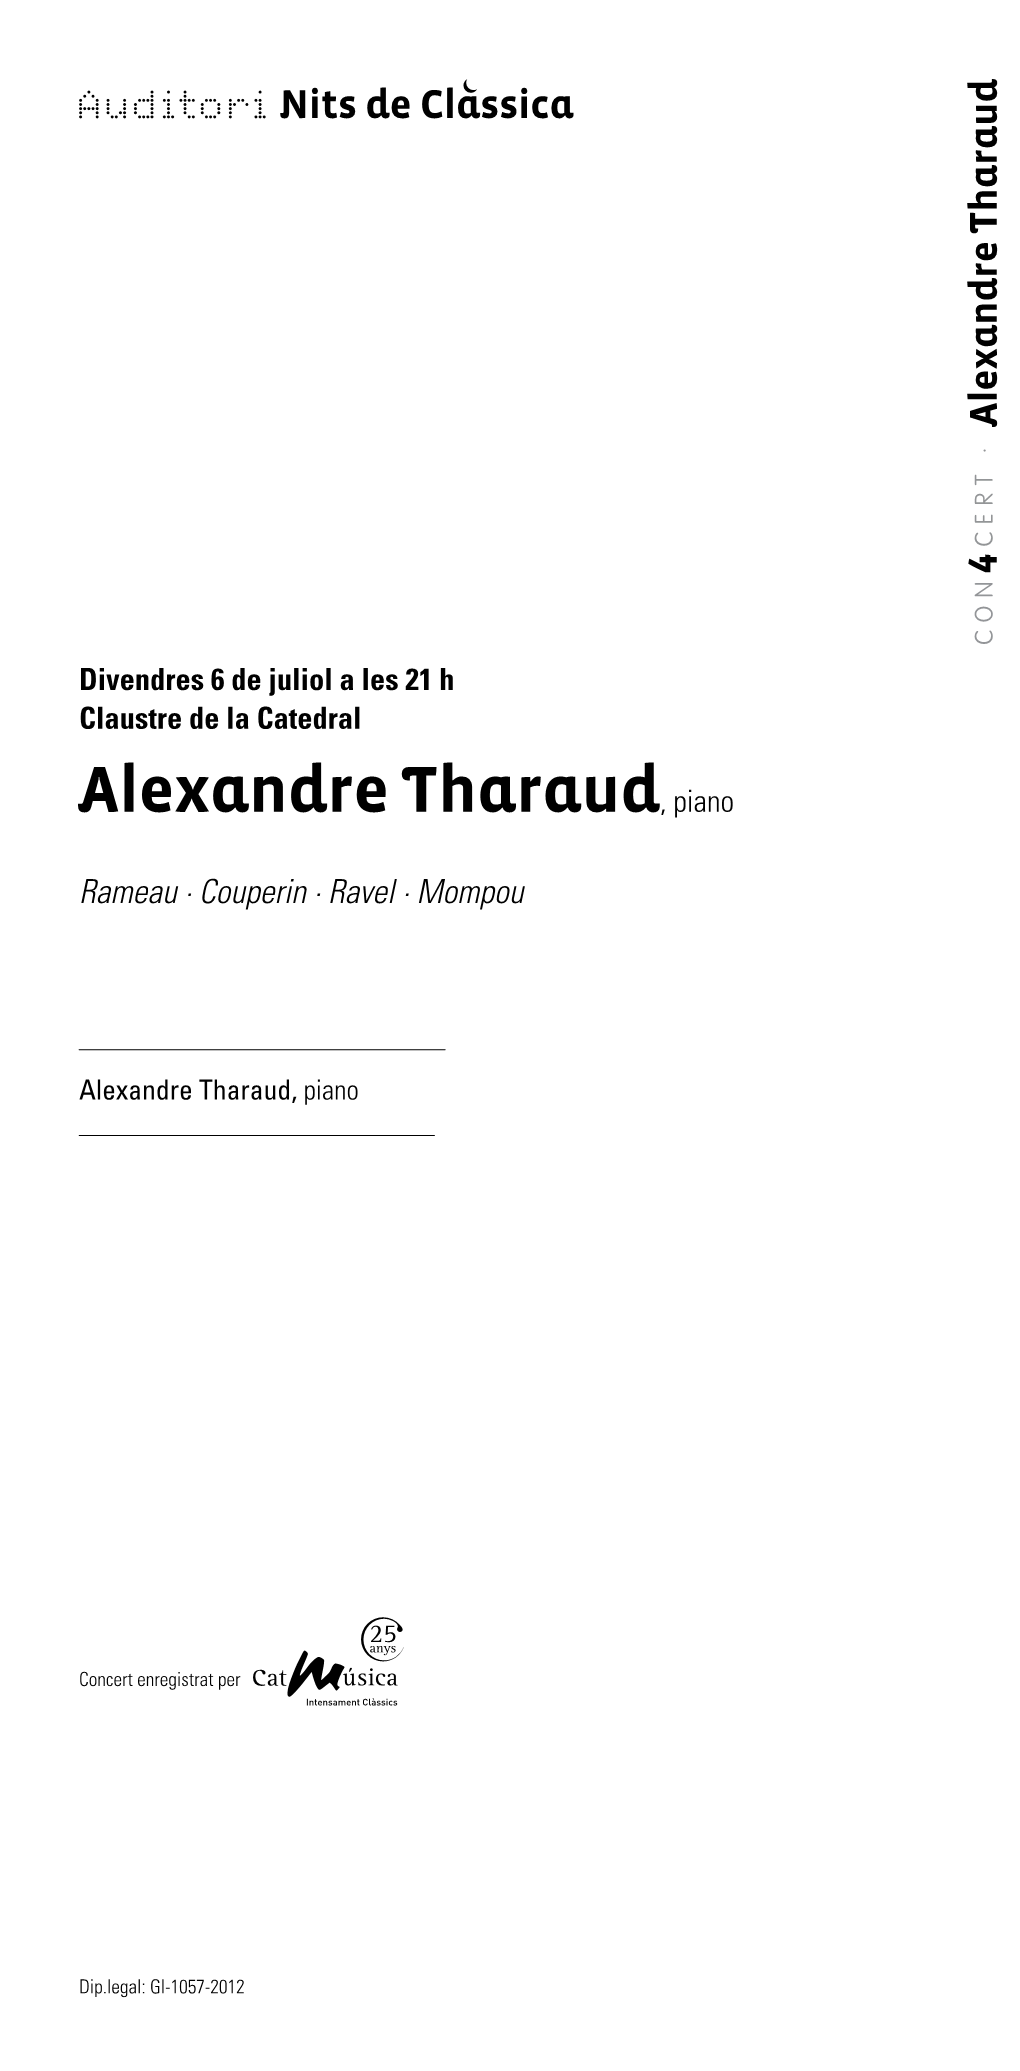 Alexandre Tharaud, Piano